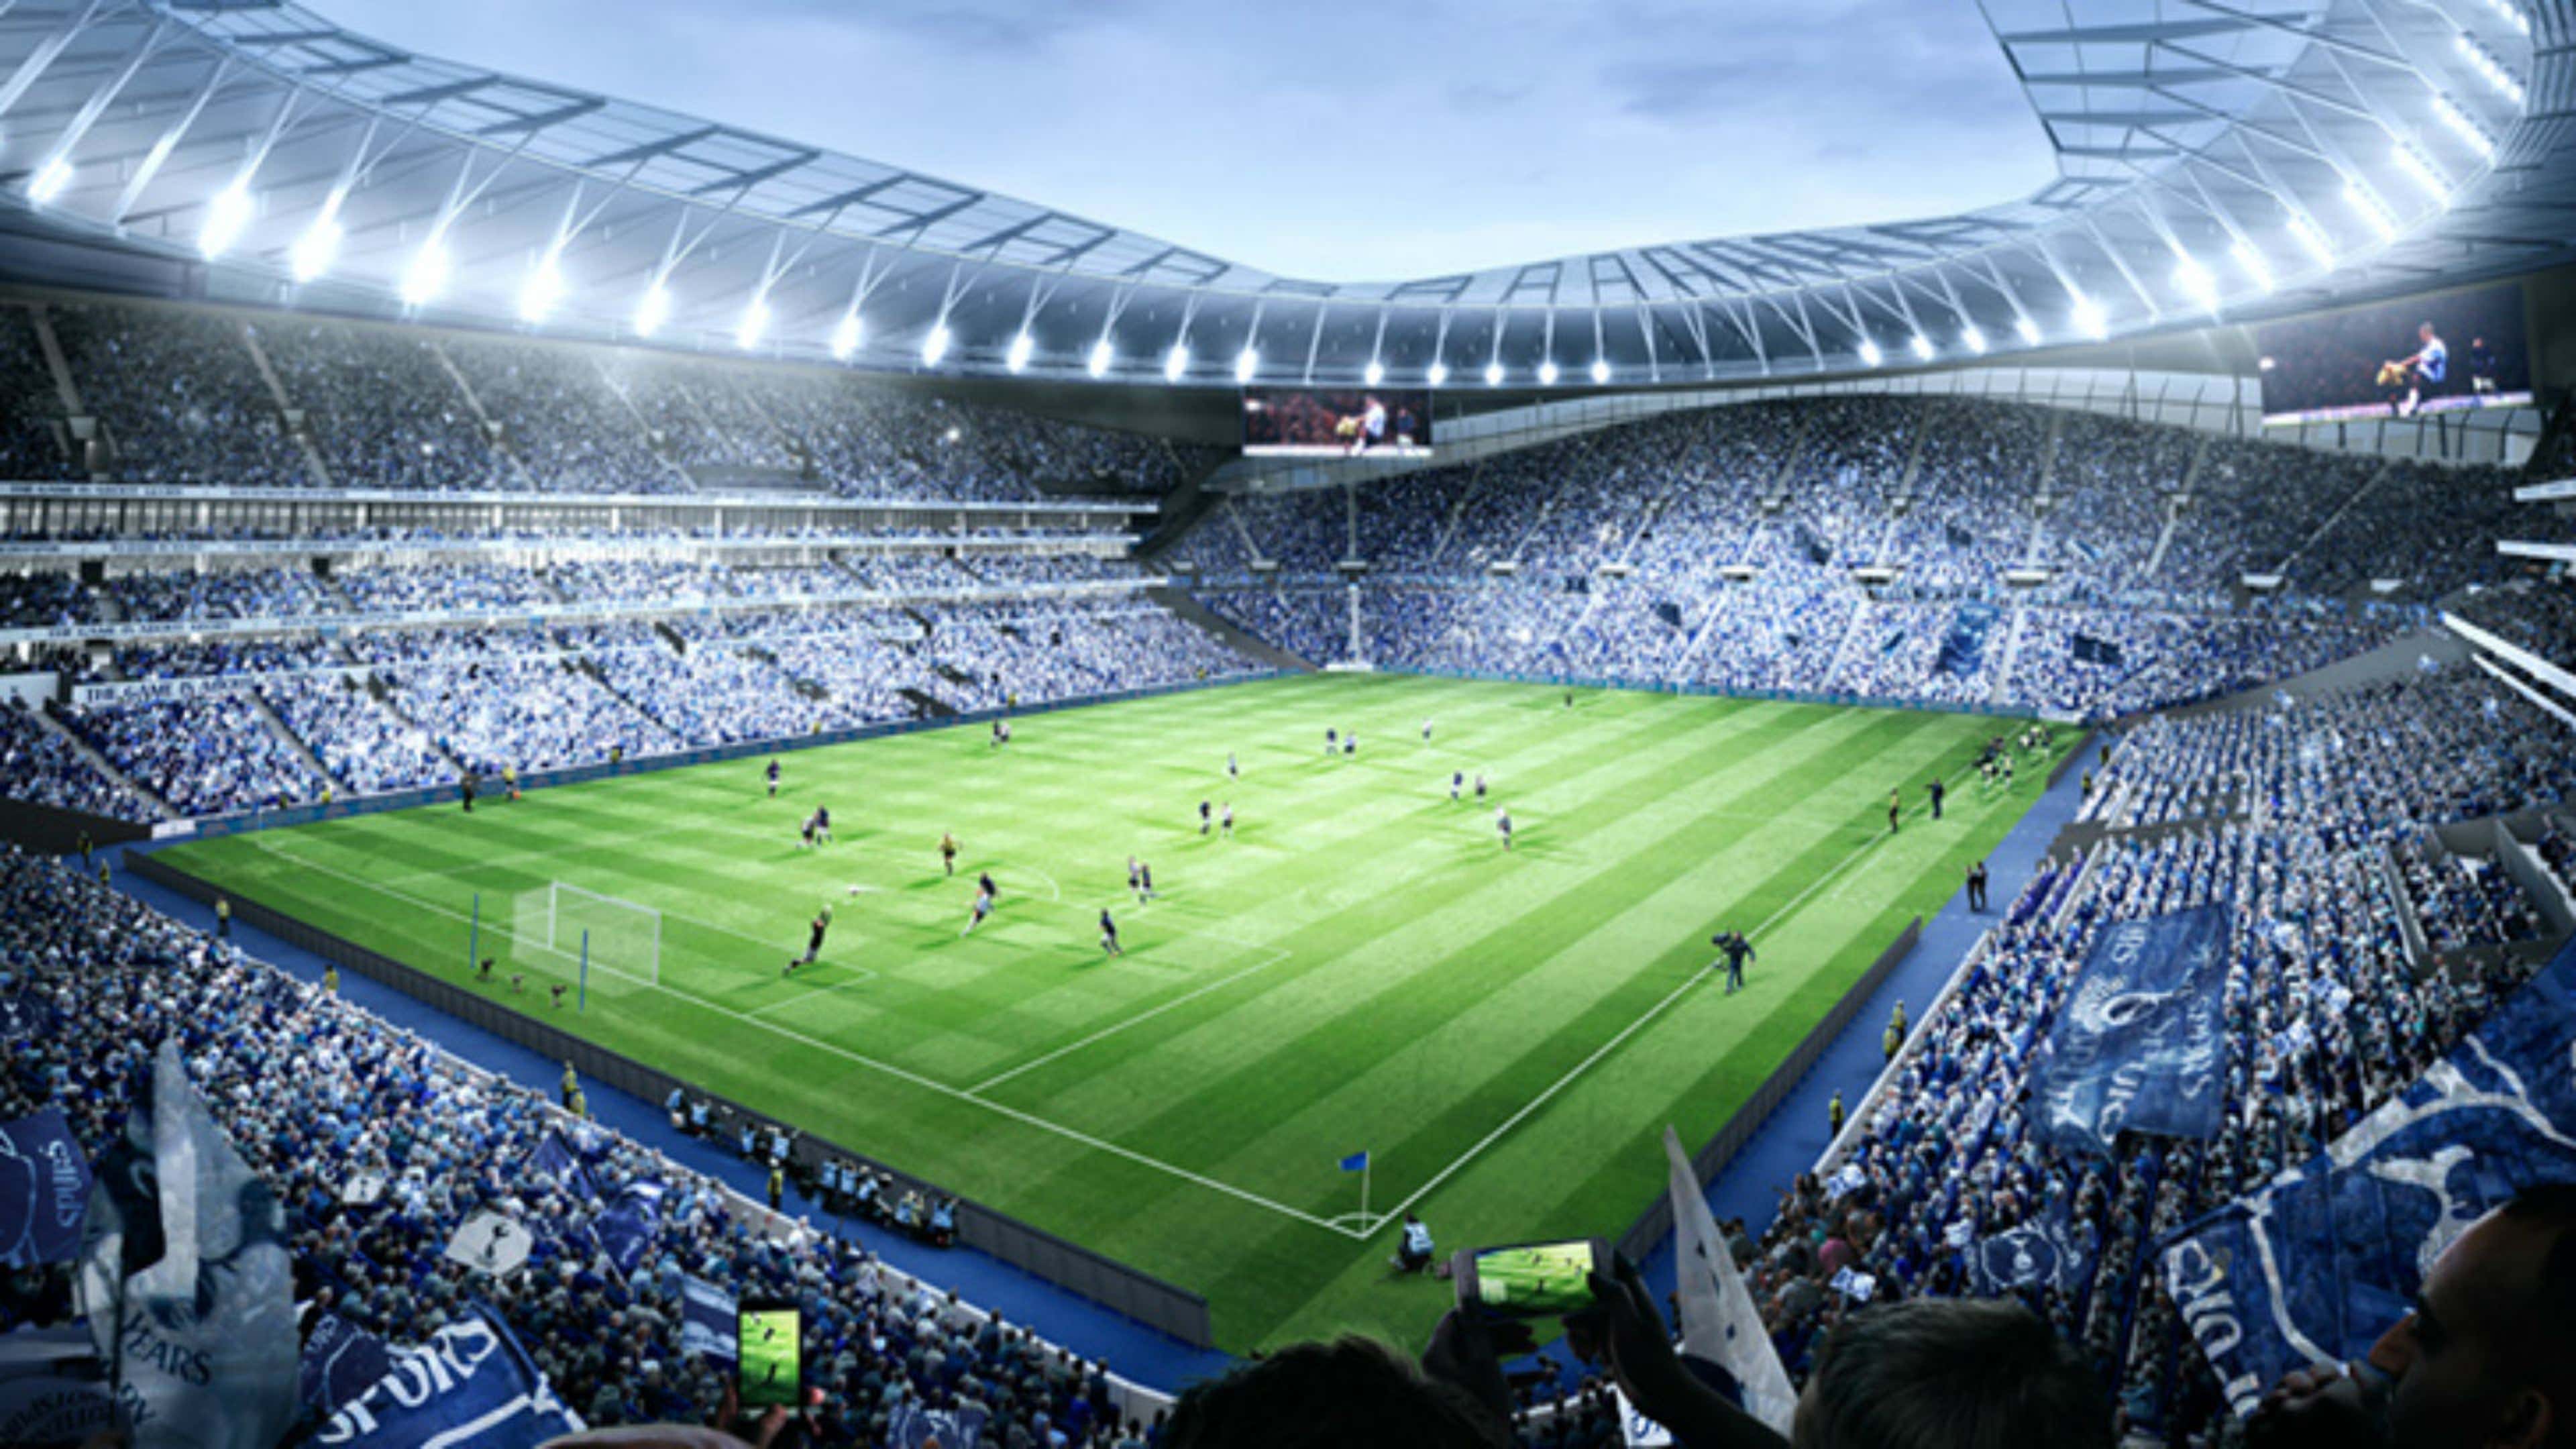 Tottenham Hotspur Stadium concept 2015